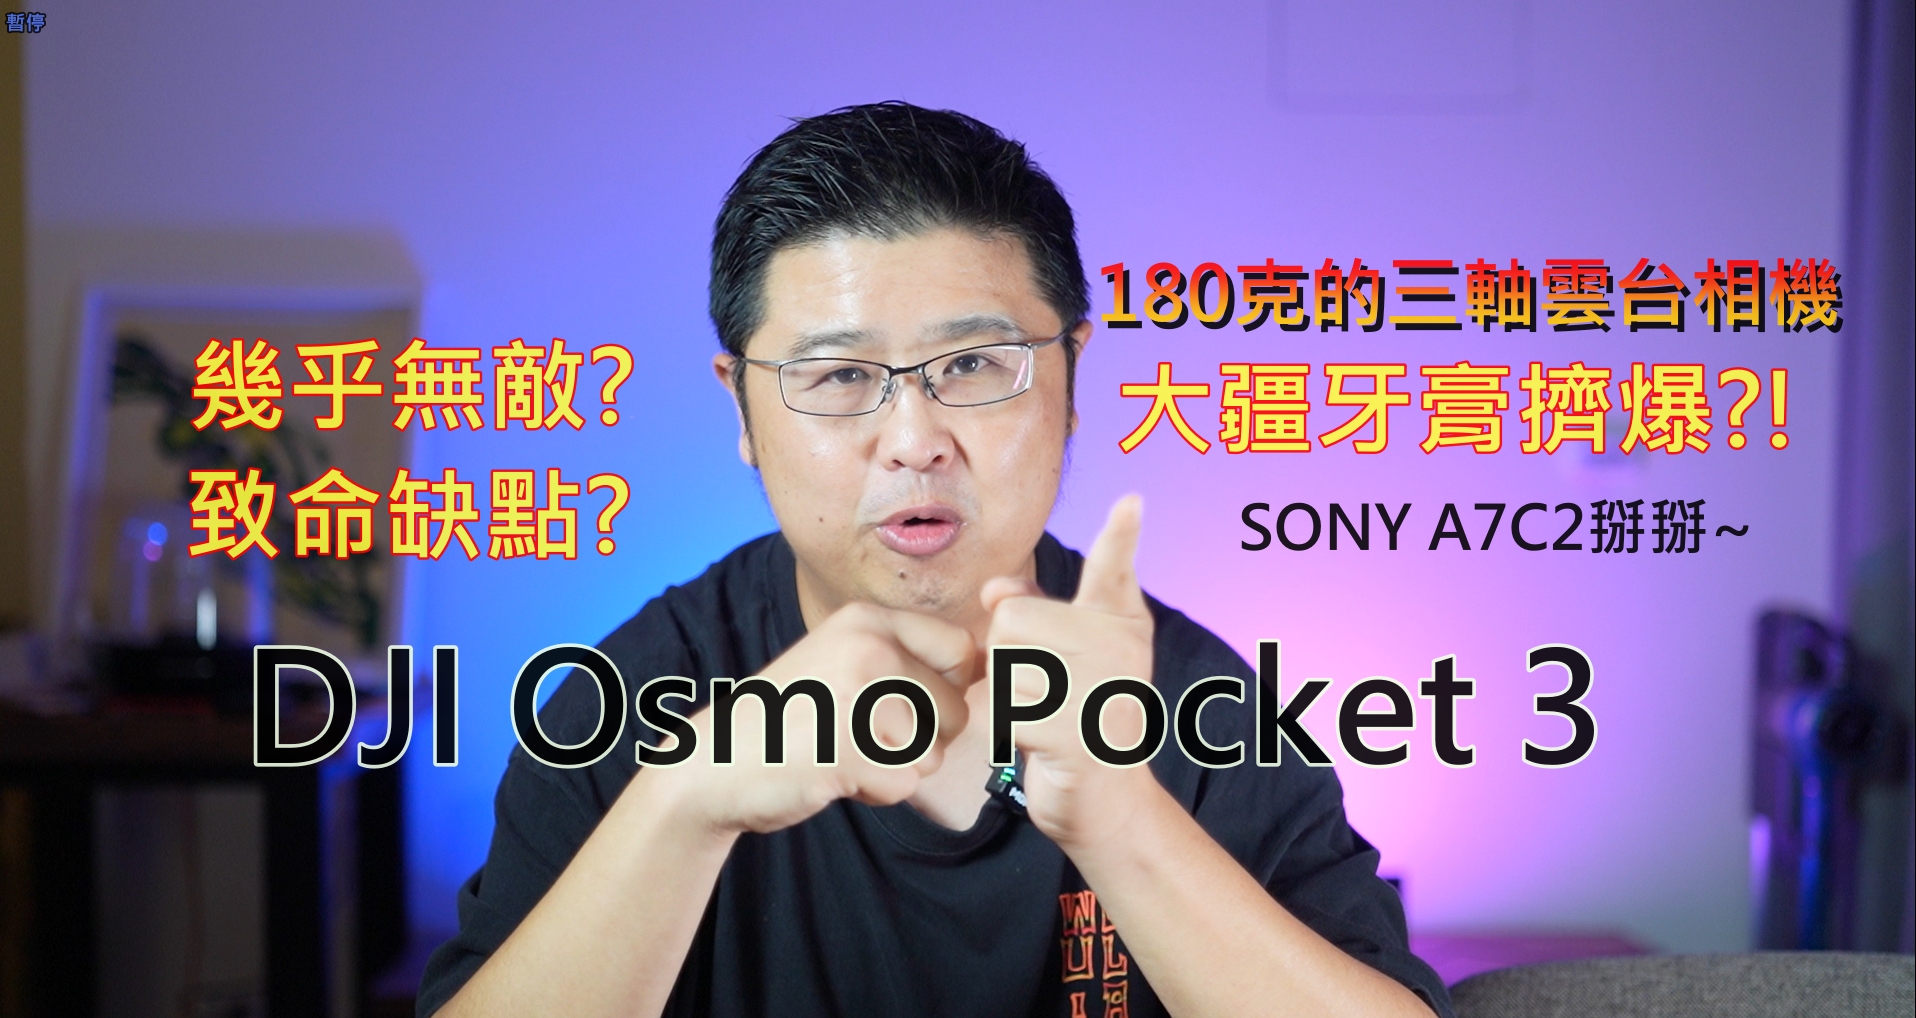 1英吋感光元件居然可以塞180克重的小機器?! 大疆DJI Osmo Pocket 3幾乎無敵! 看完眾多評測，這個致命缺點你能接受嗎?